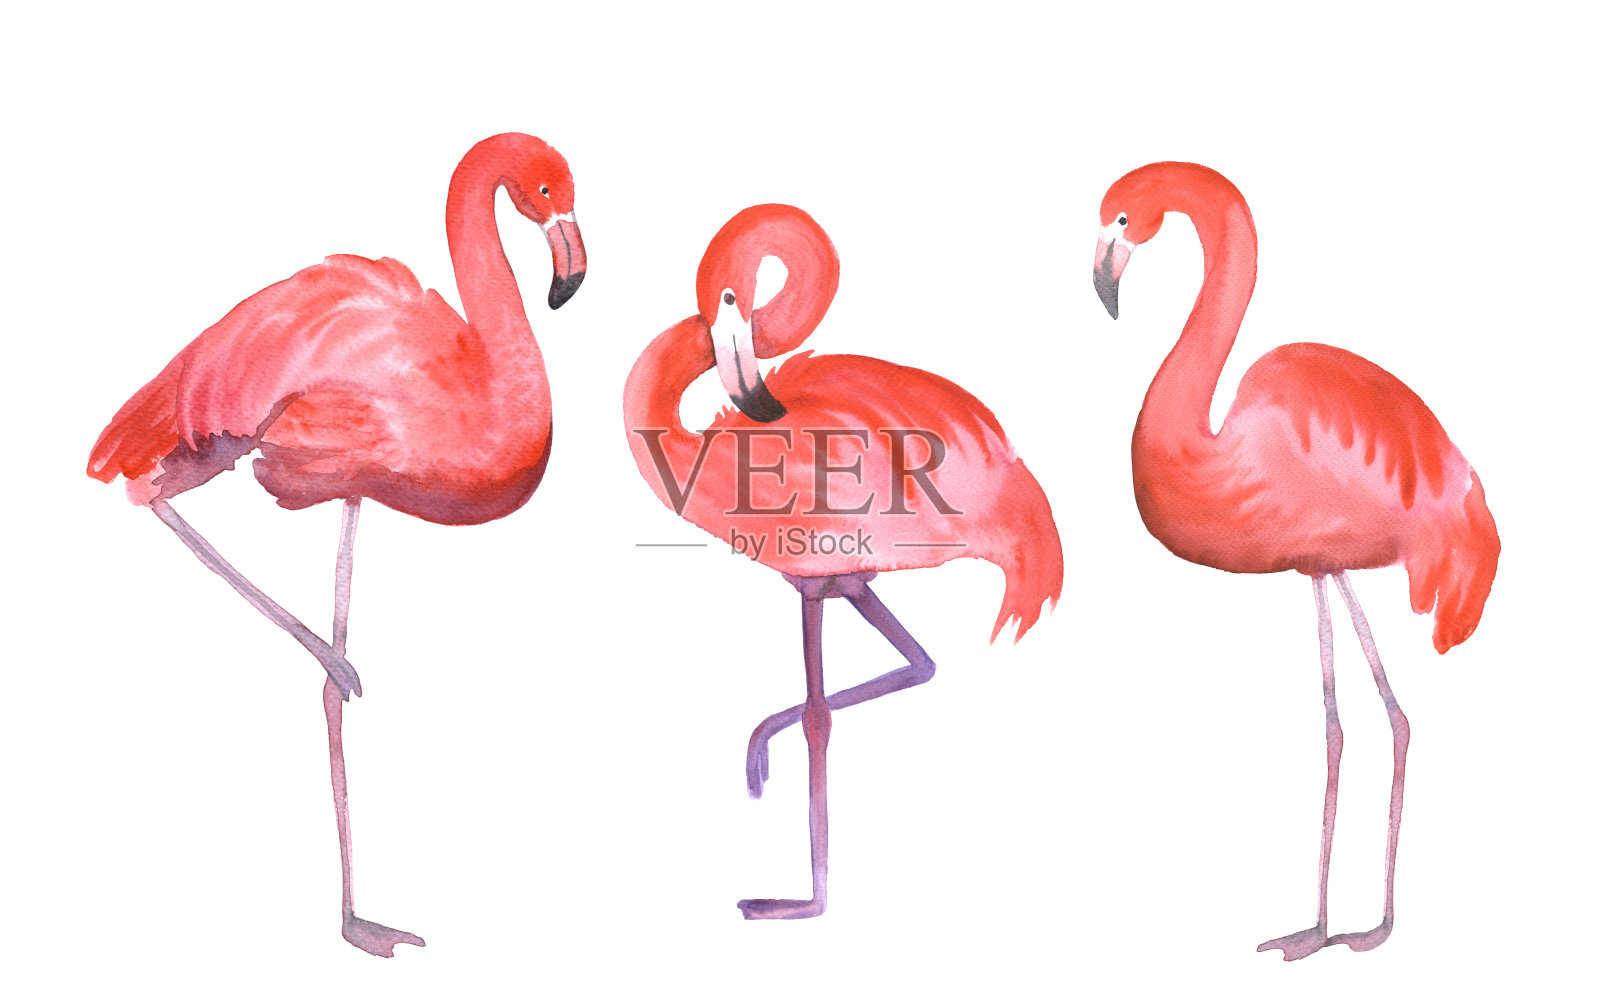 粉红色的火烈鸟插画图片素材